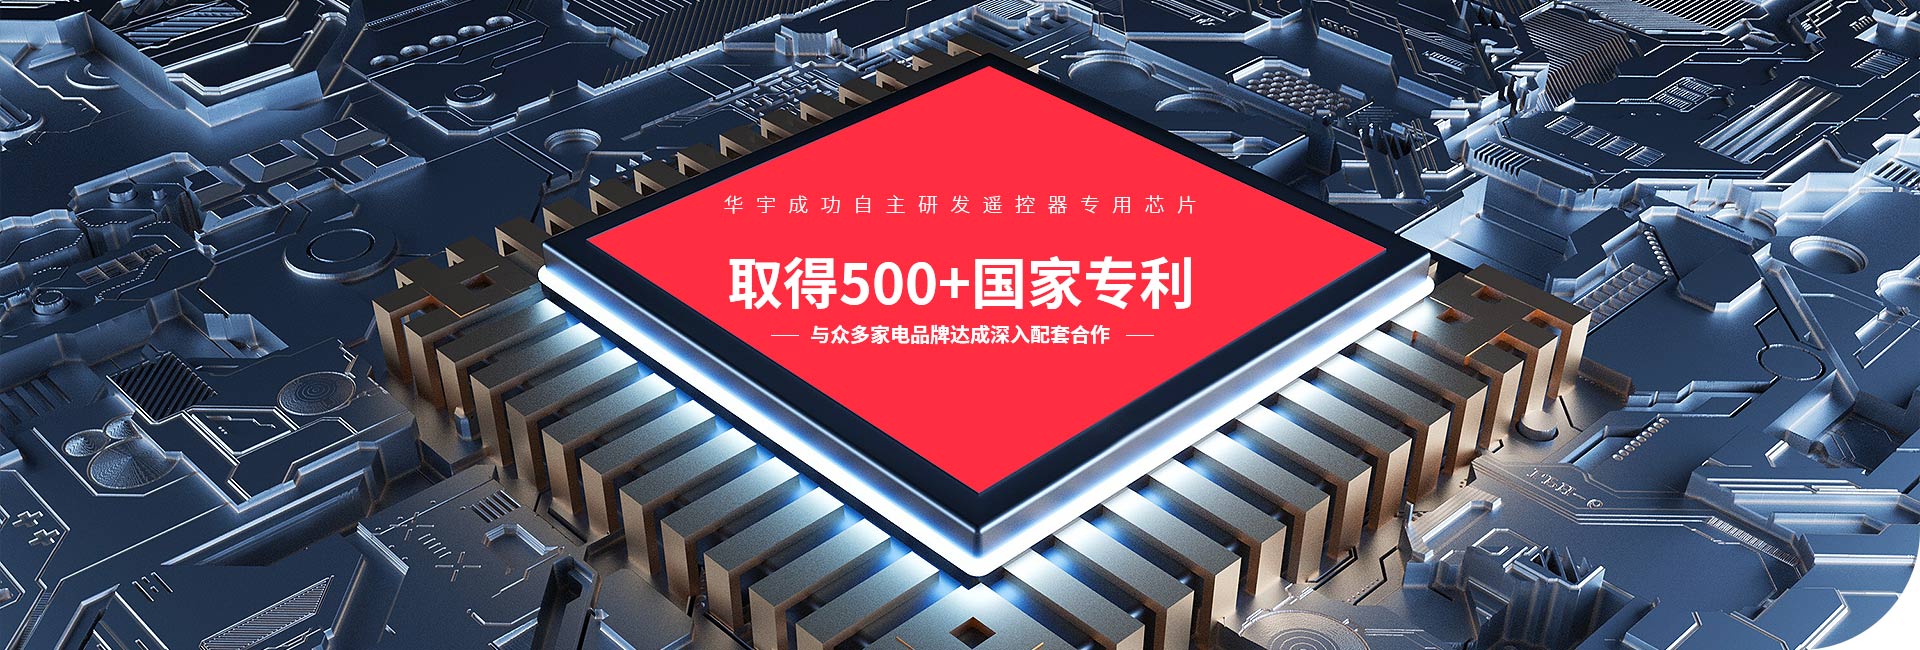 华宇成功自主研发遥控器专用芯片 取得500+国家专利  与众多家电品牌达成深入配套合作